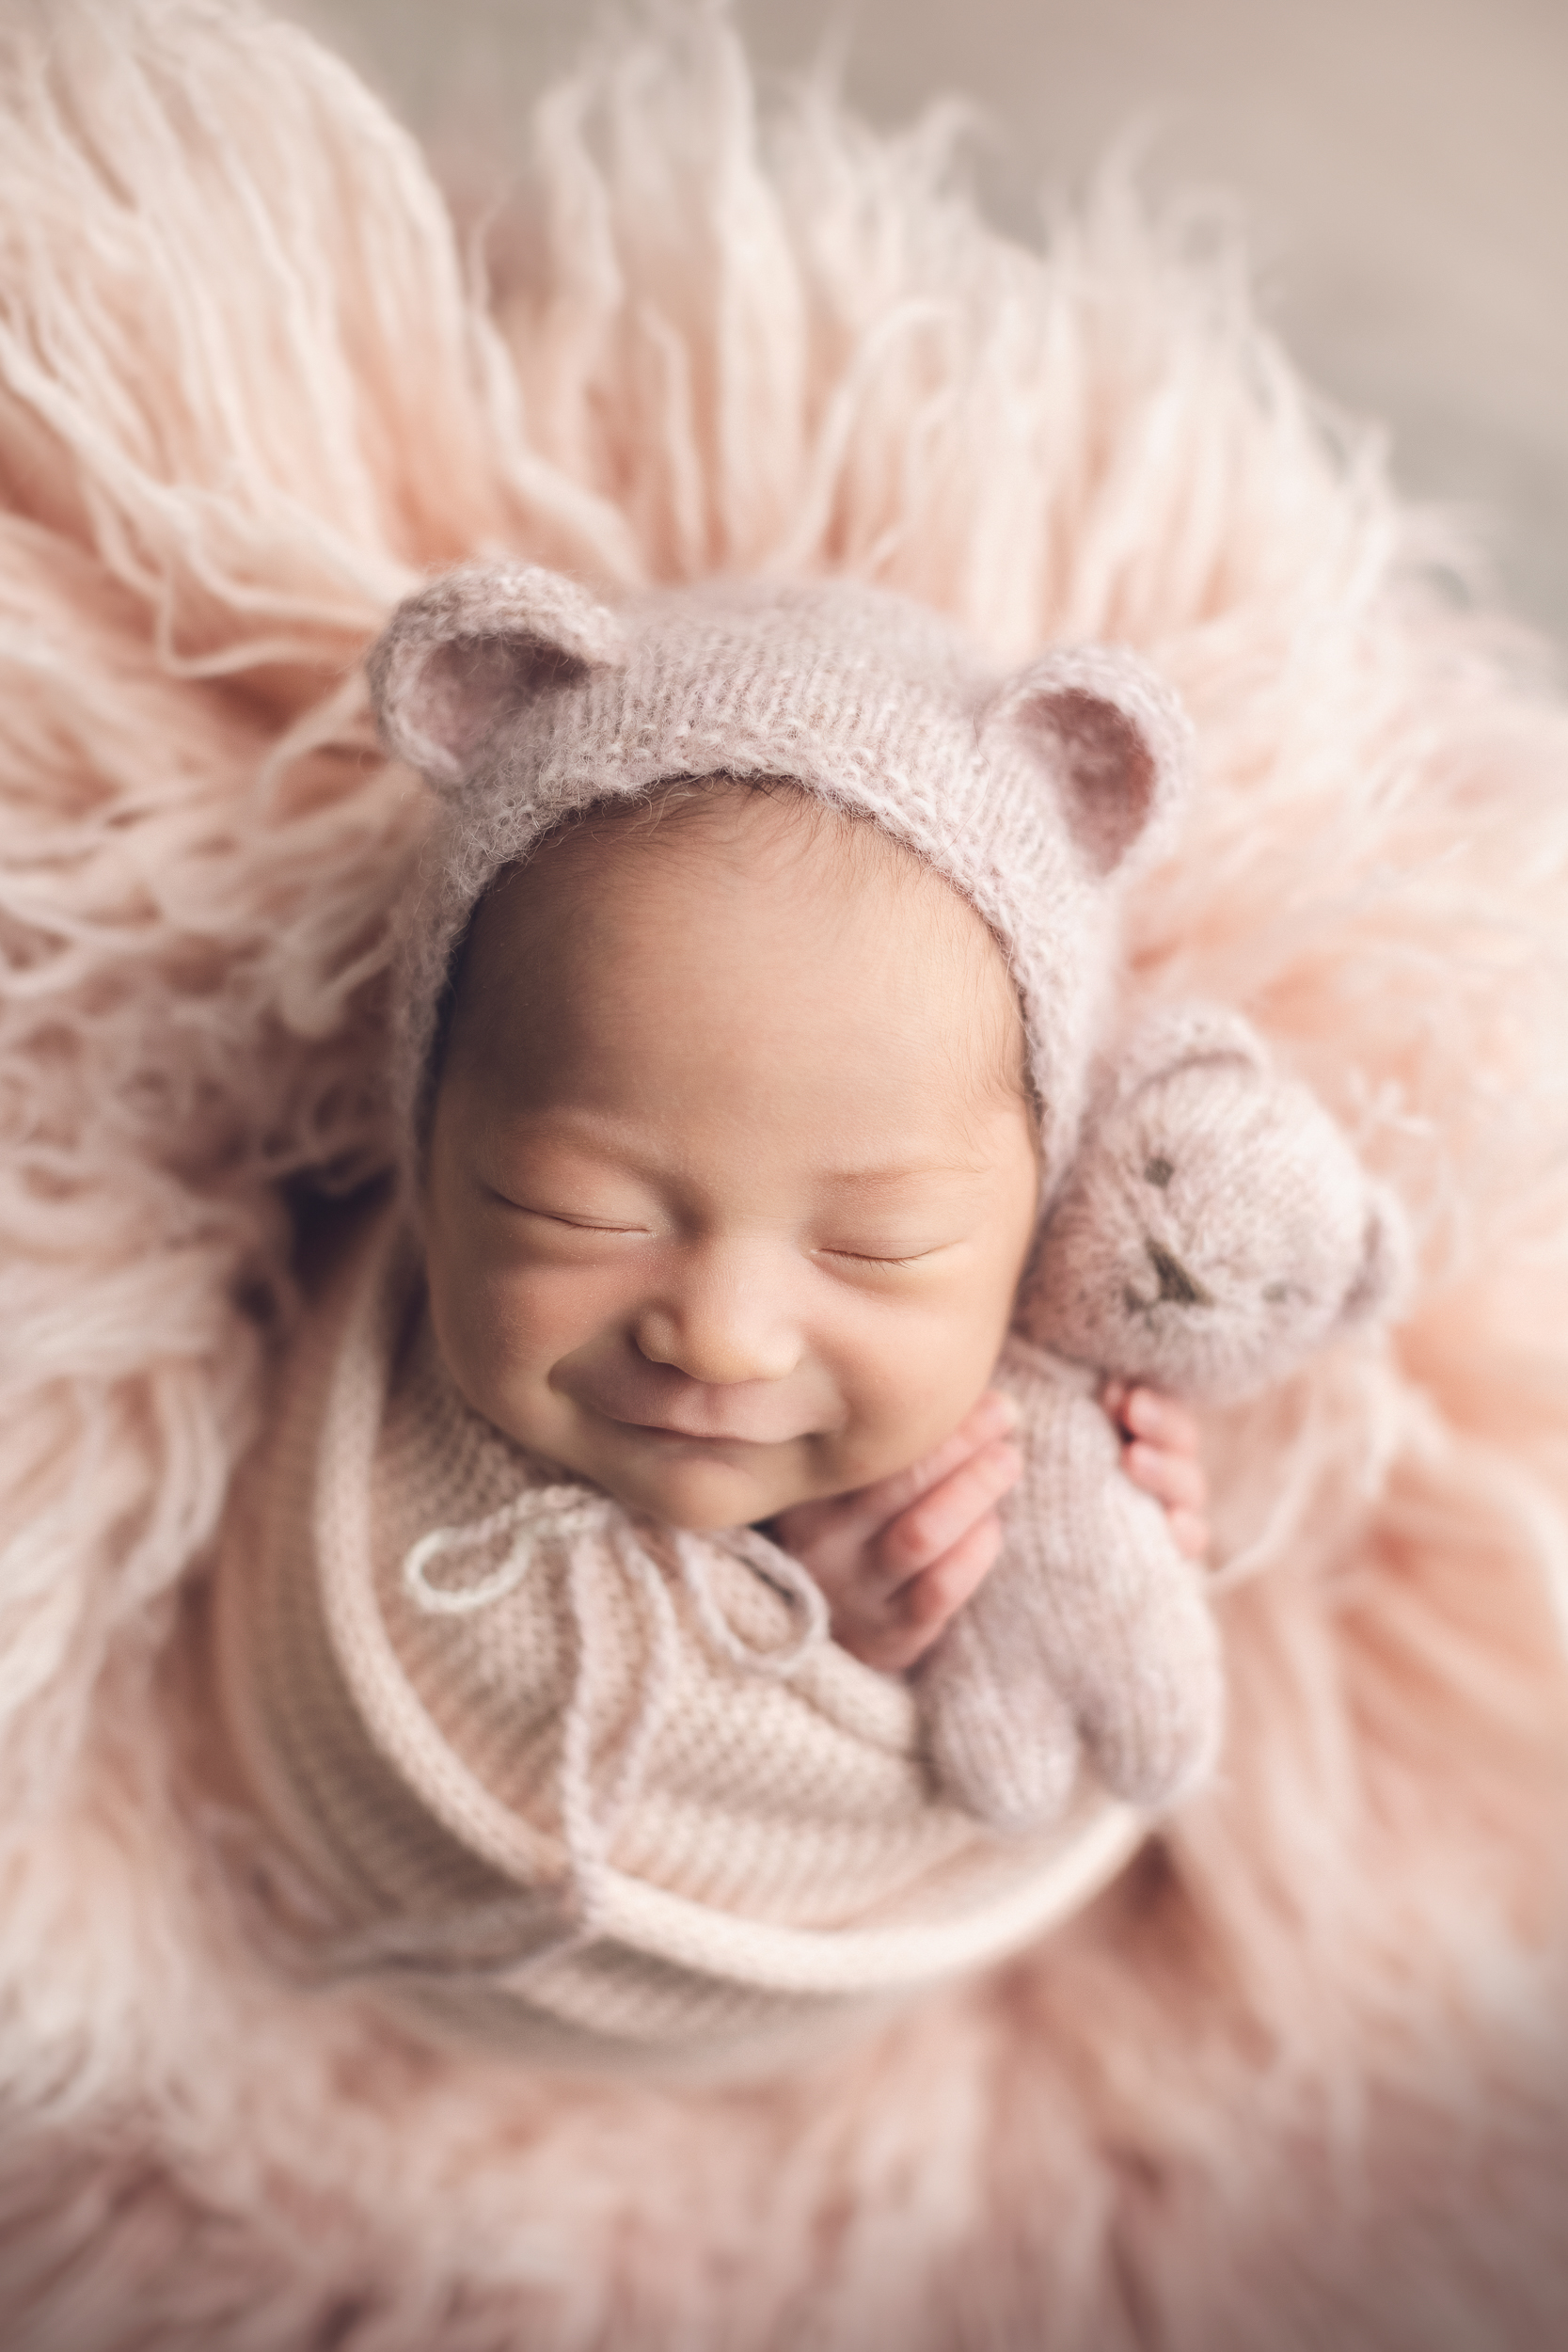 newborn photography testimonials - baby girl smiling 